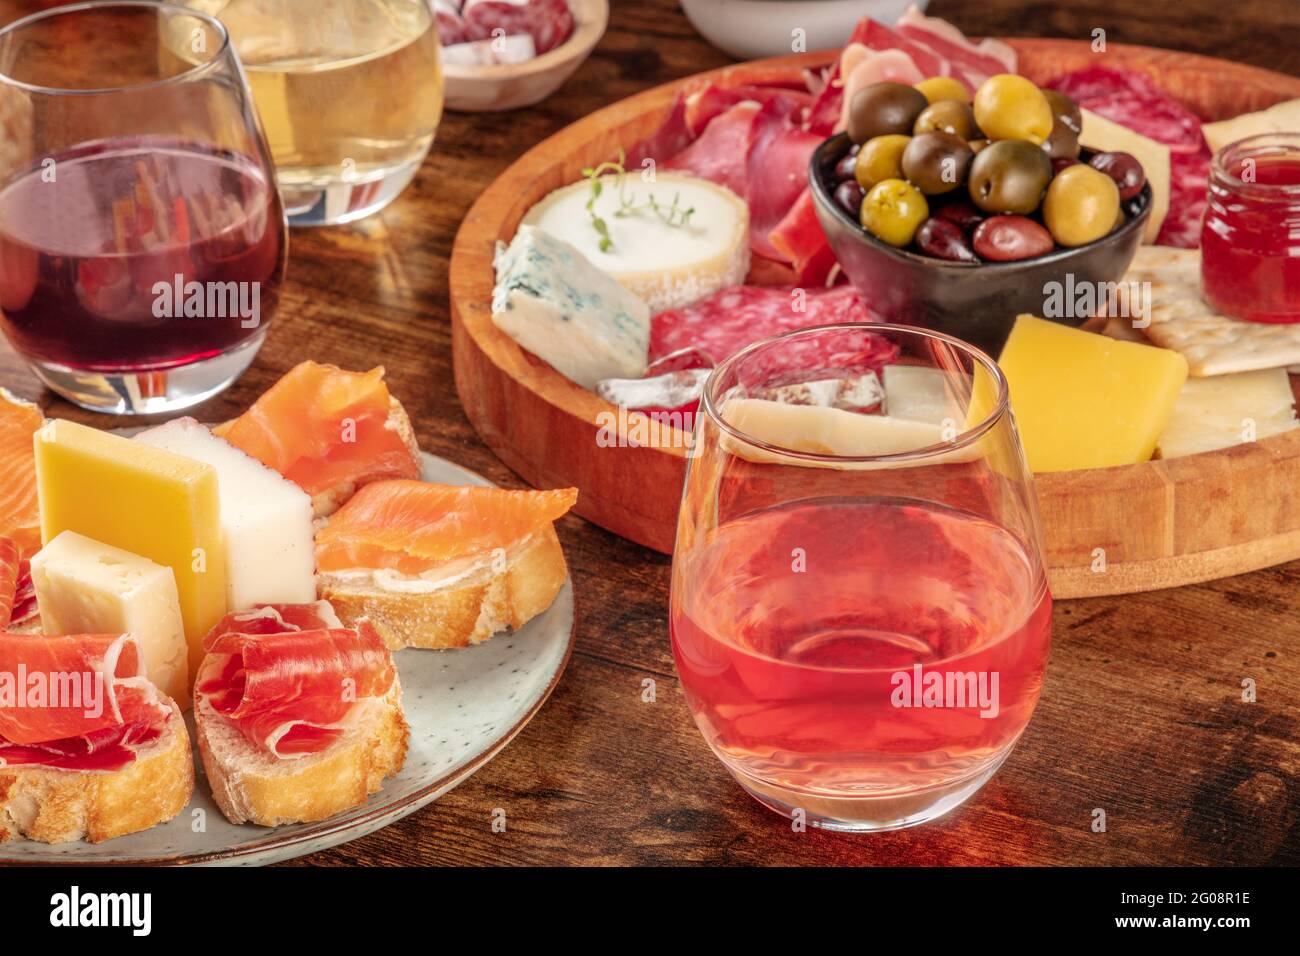 Wein, Sandwiches, Wurstwaren und Käseplatte auf rustikalem Holzhintergrund. Spanische Tapas oder italienische Antipasti auf einem Tisch in einer Bar Stockfoto